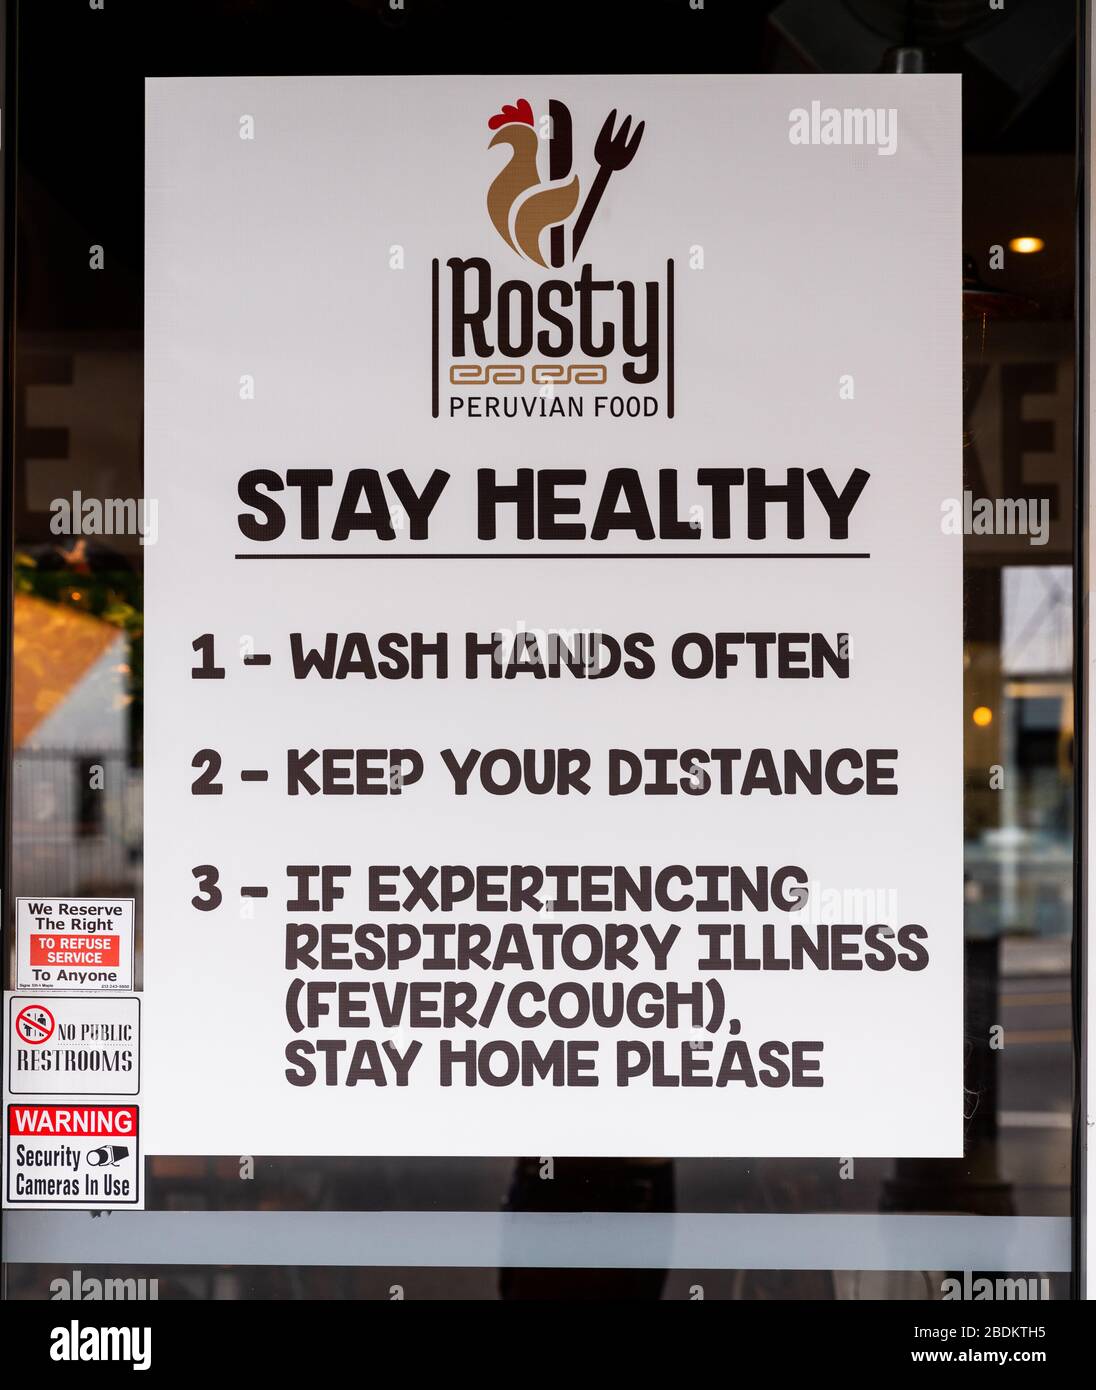 Accedi alla finestra del ristorante durante lo scoppio di Covid-19. Si legge: Rimanere in salute, lavare le mani spesso, mantenere la distanza, se si verificano malattie, rimanere a casa. Foto Stock